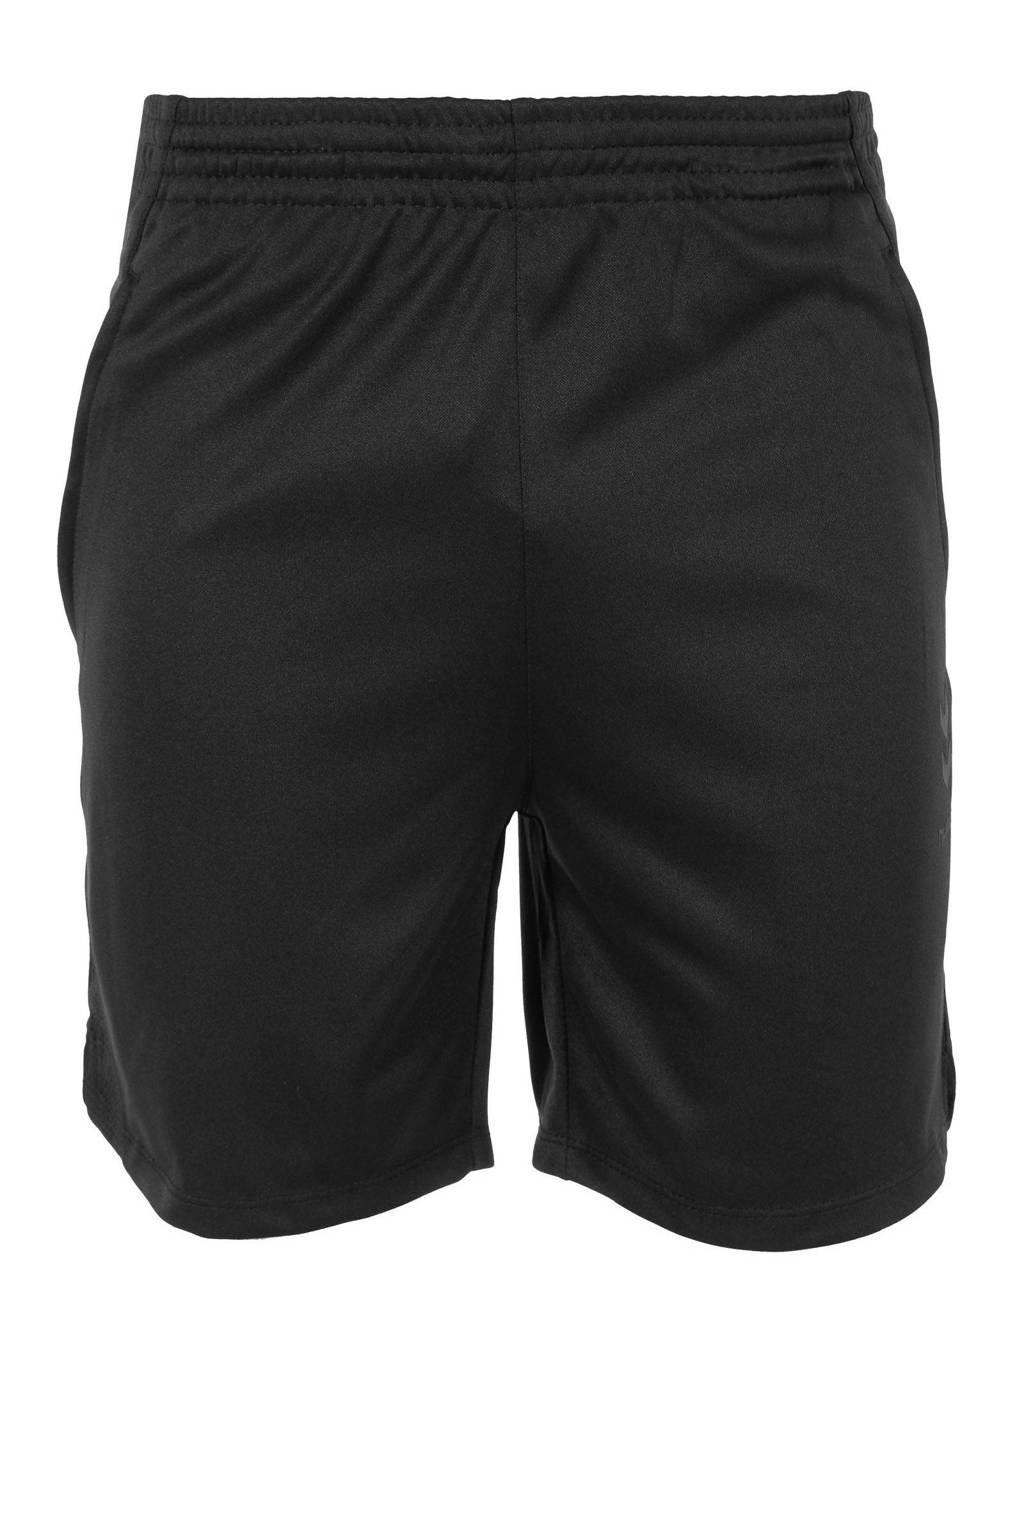 Zwarte heren hummel voetbalshort van polyester met regular fit, elastische tailleband met koord en logo dessin